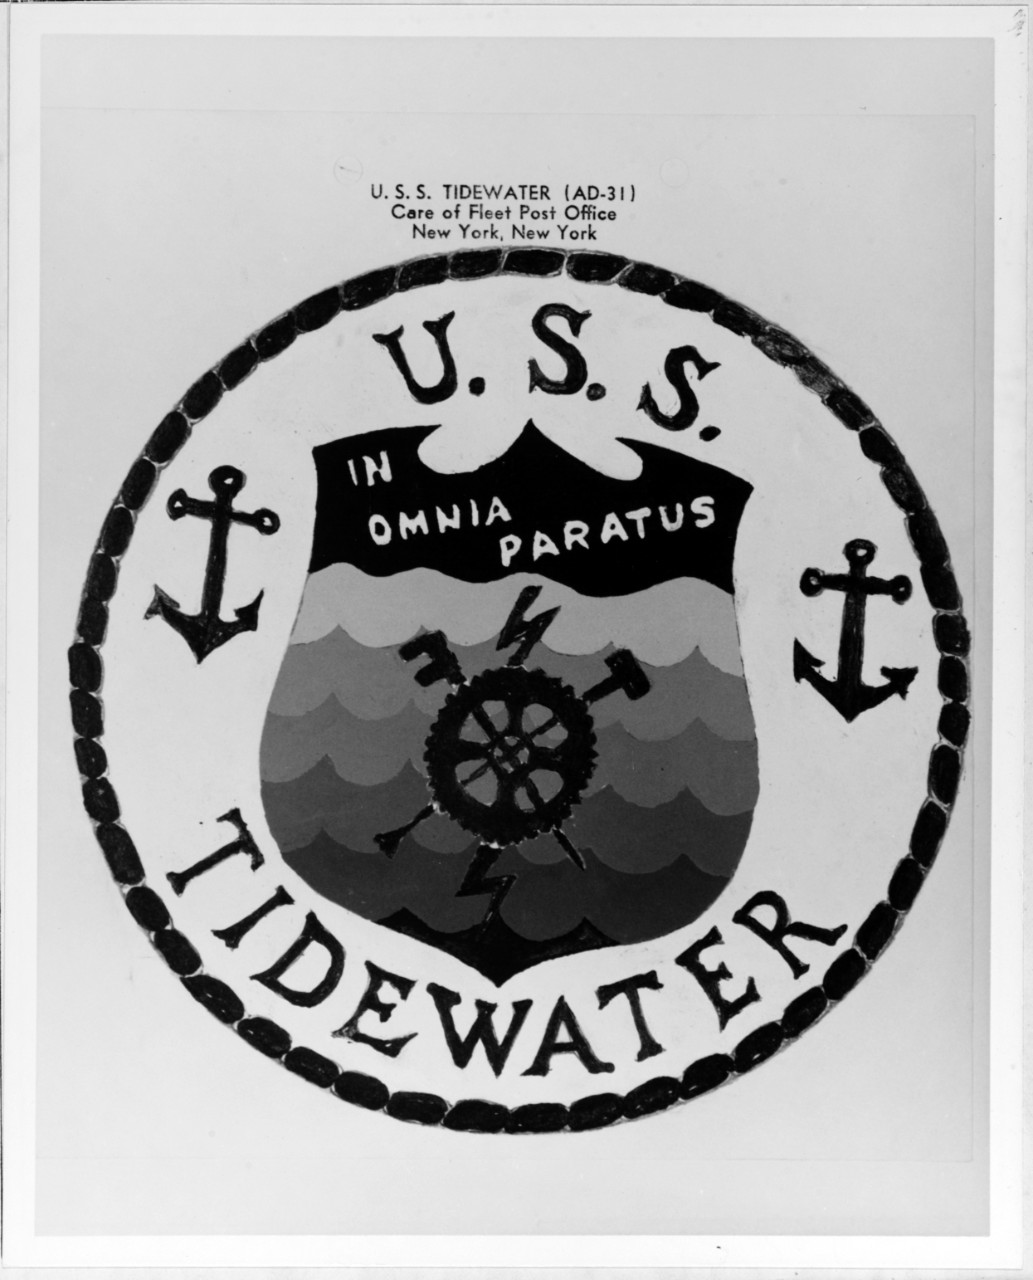 Insignia: USS TIDEWATER (AD-31)